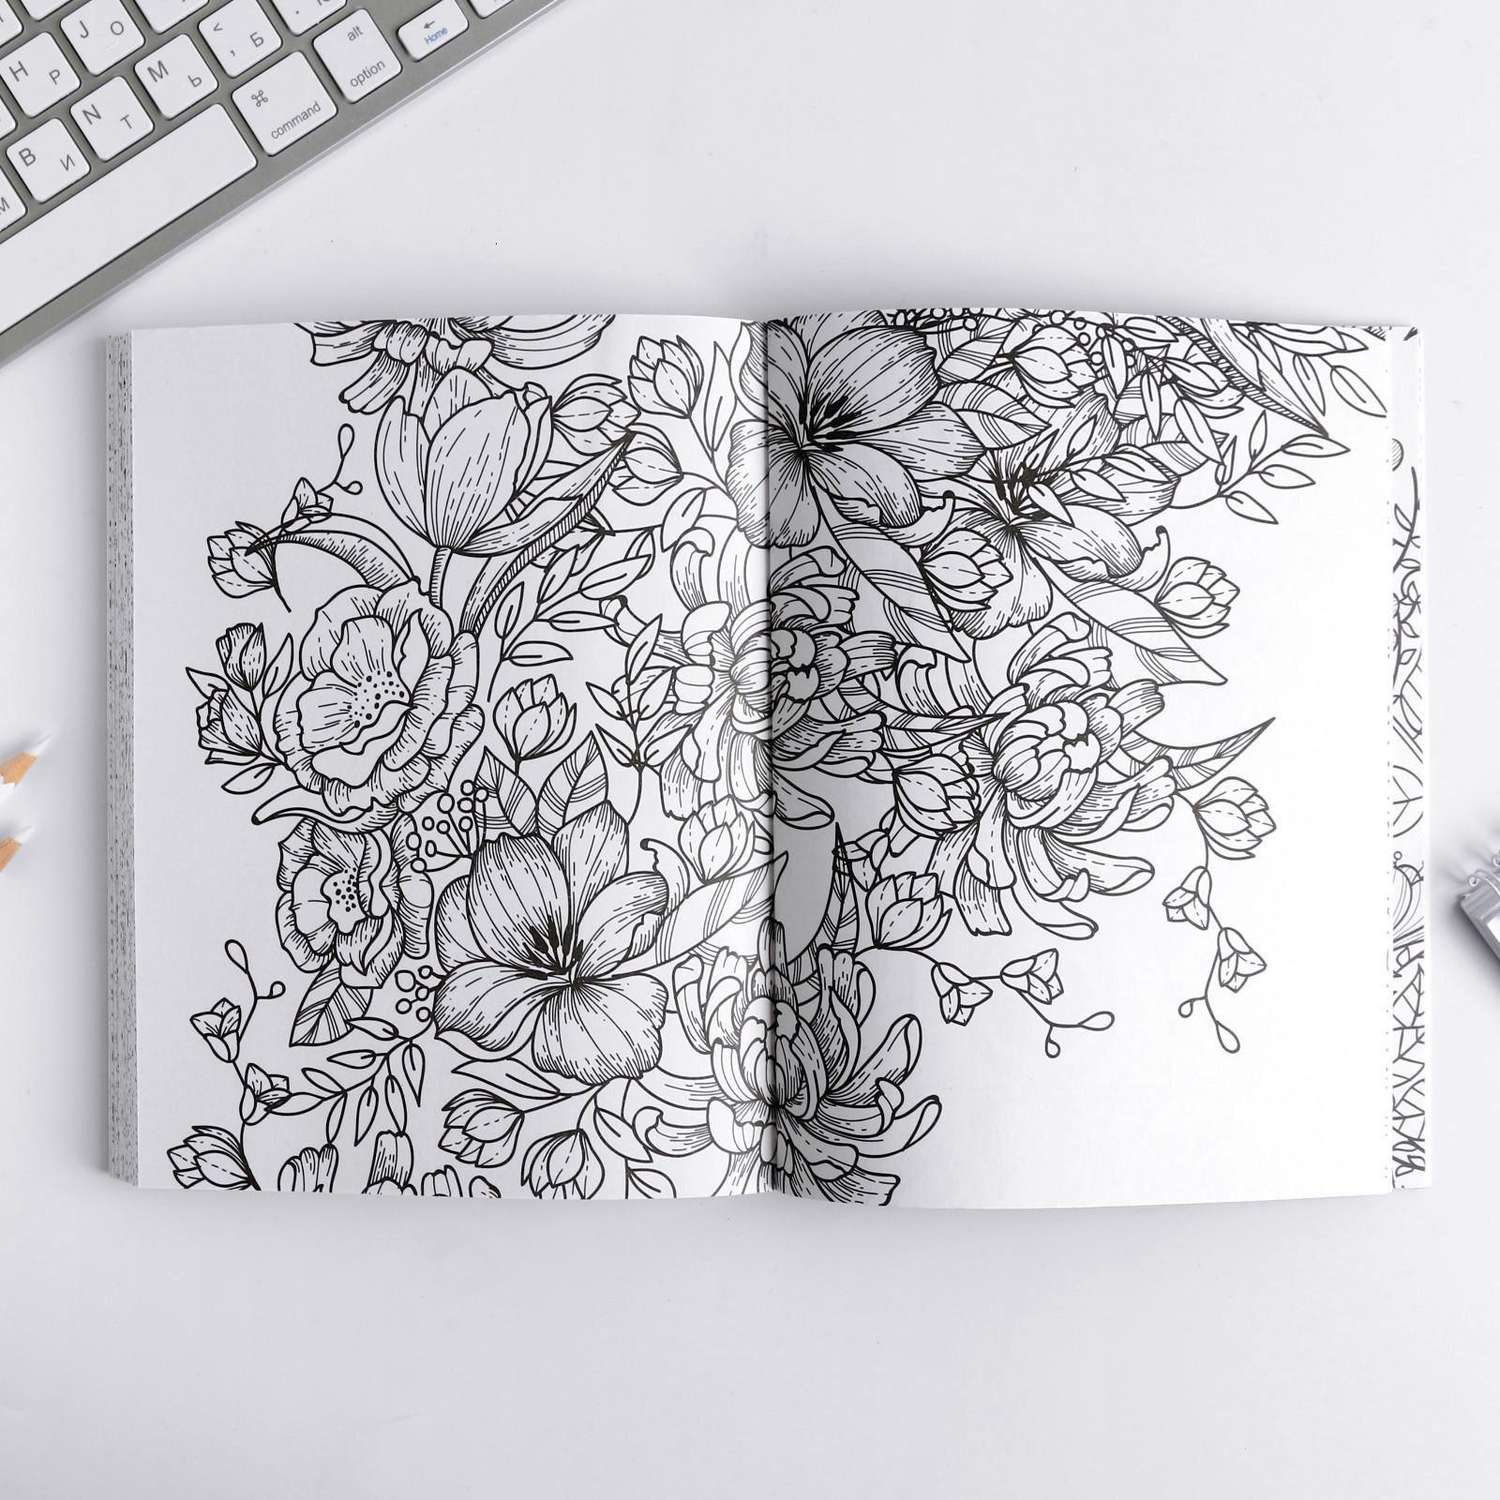 Ежедневник-смешбук ArtFox с раскраской антистресс «365 творческий дней» А5 80 листов - фото 9